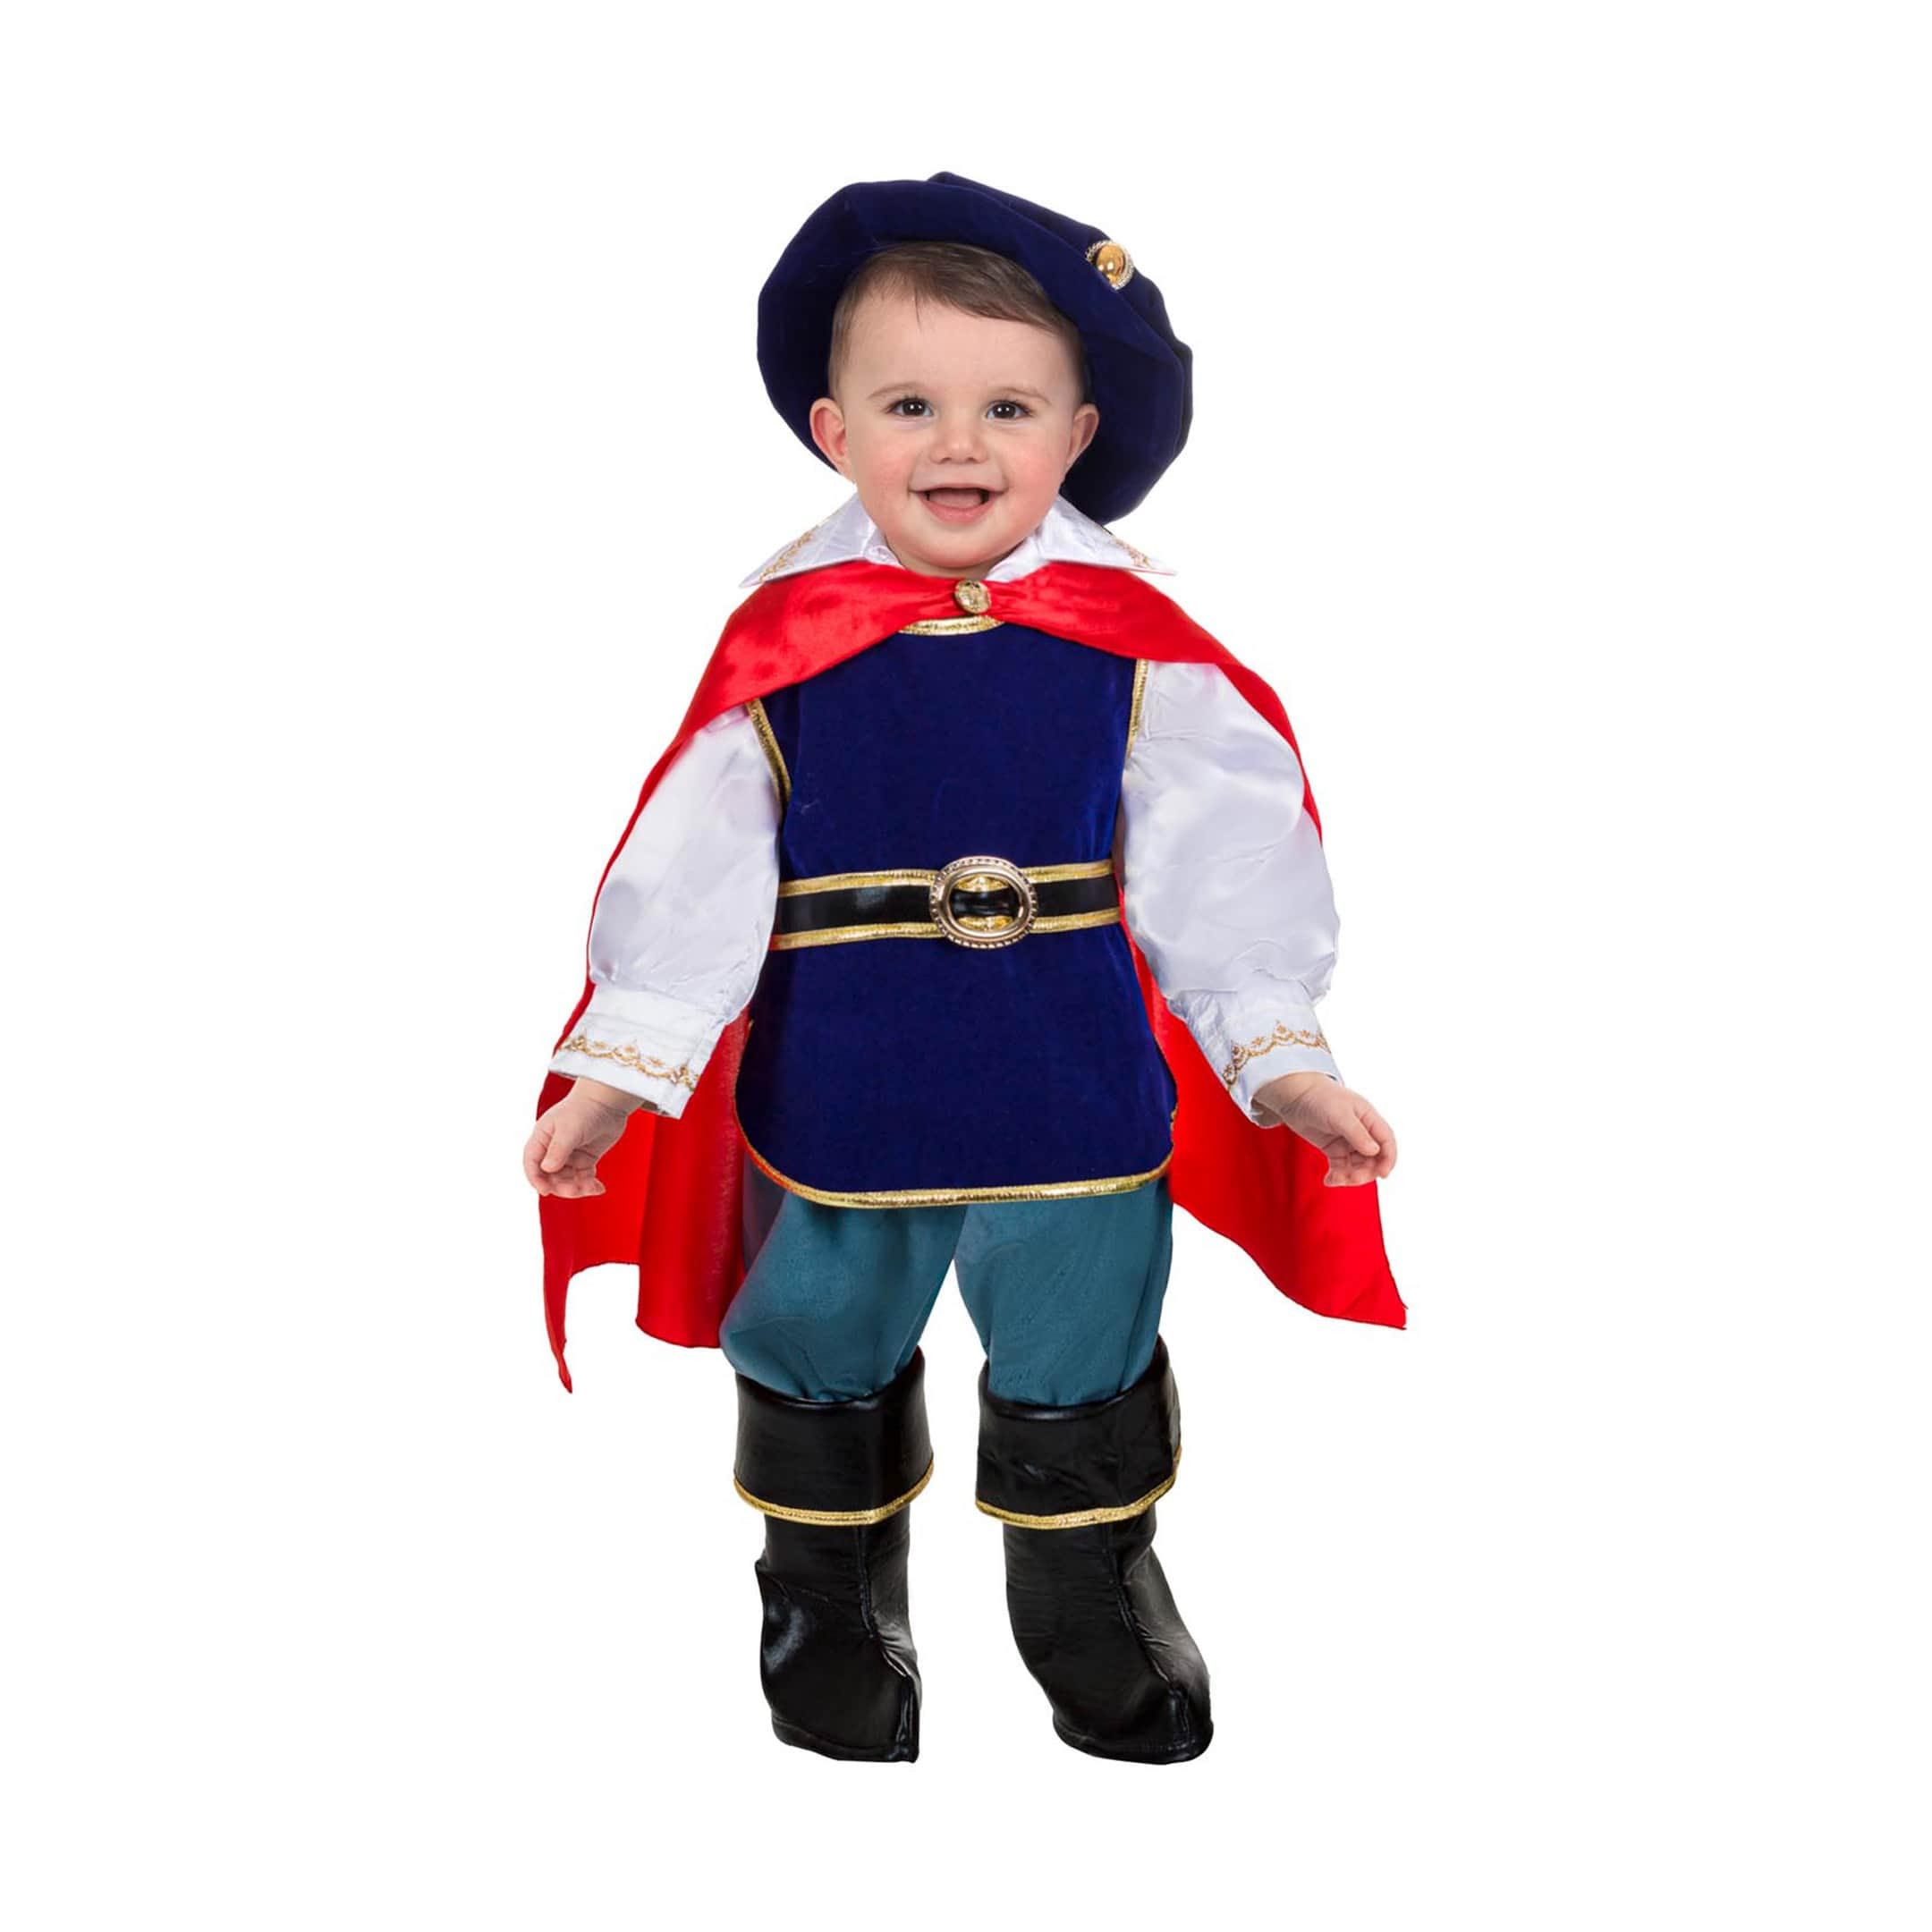 Costume di carnevale per bambino - Il Principe azzurro